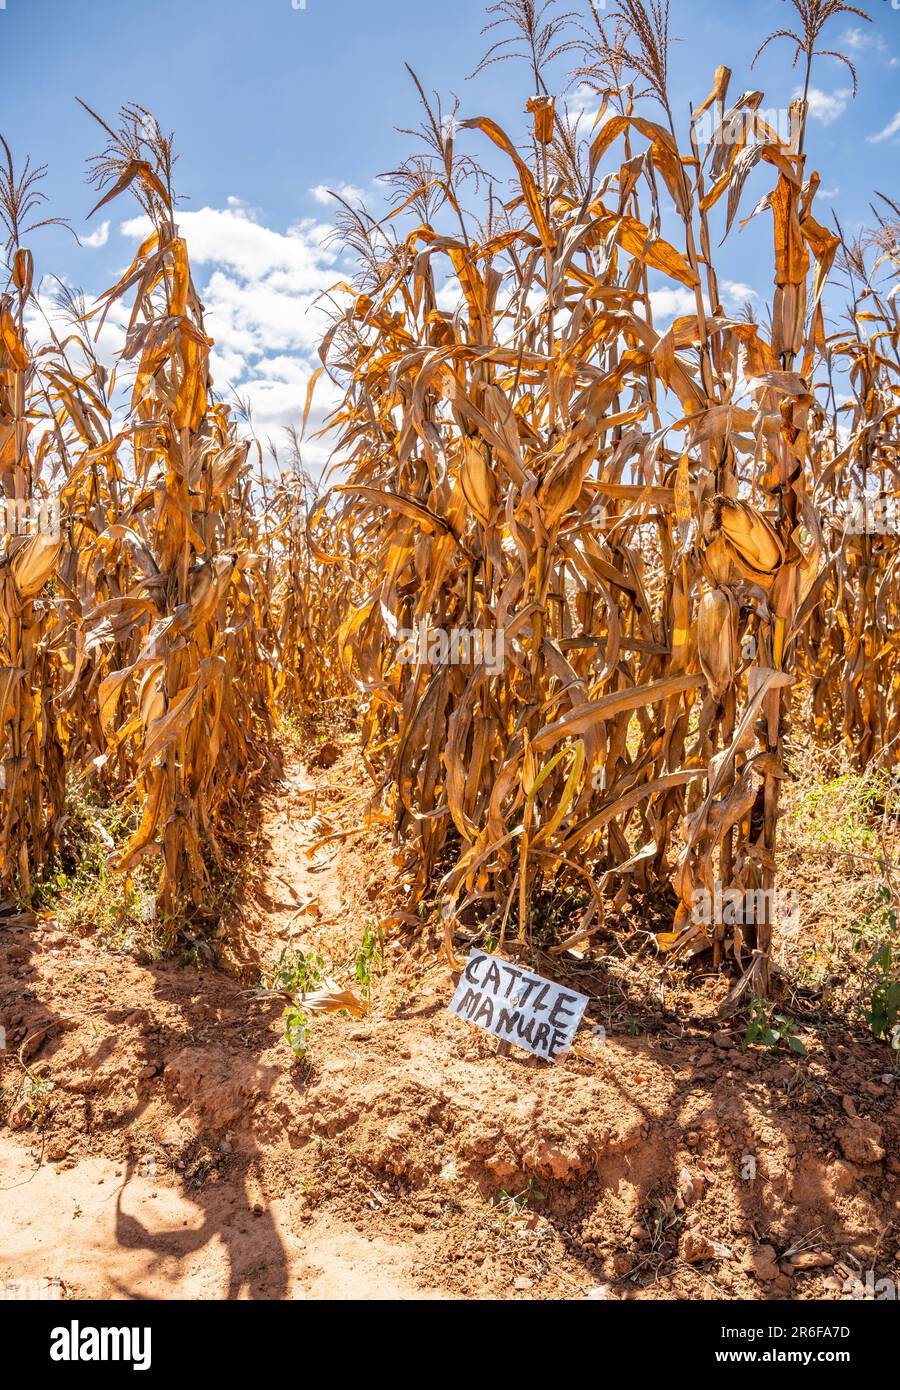 Appezzamento di mais (post-raccolto) in Malawi con un segno che indica il trattamento con letame bovino. Foto Stock